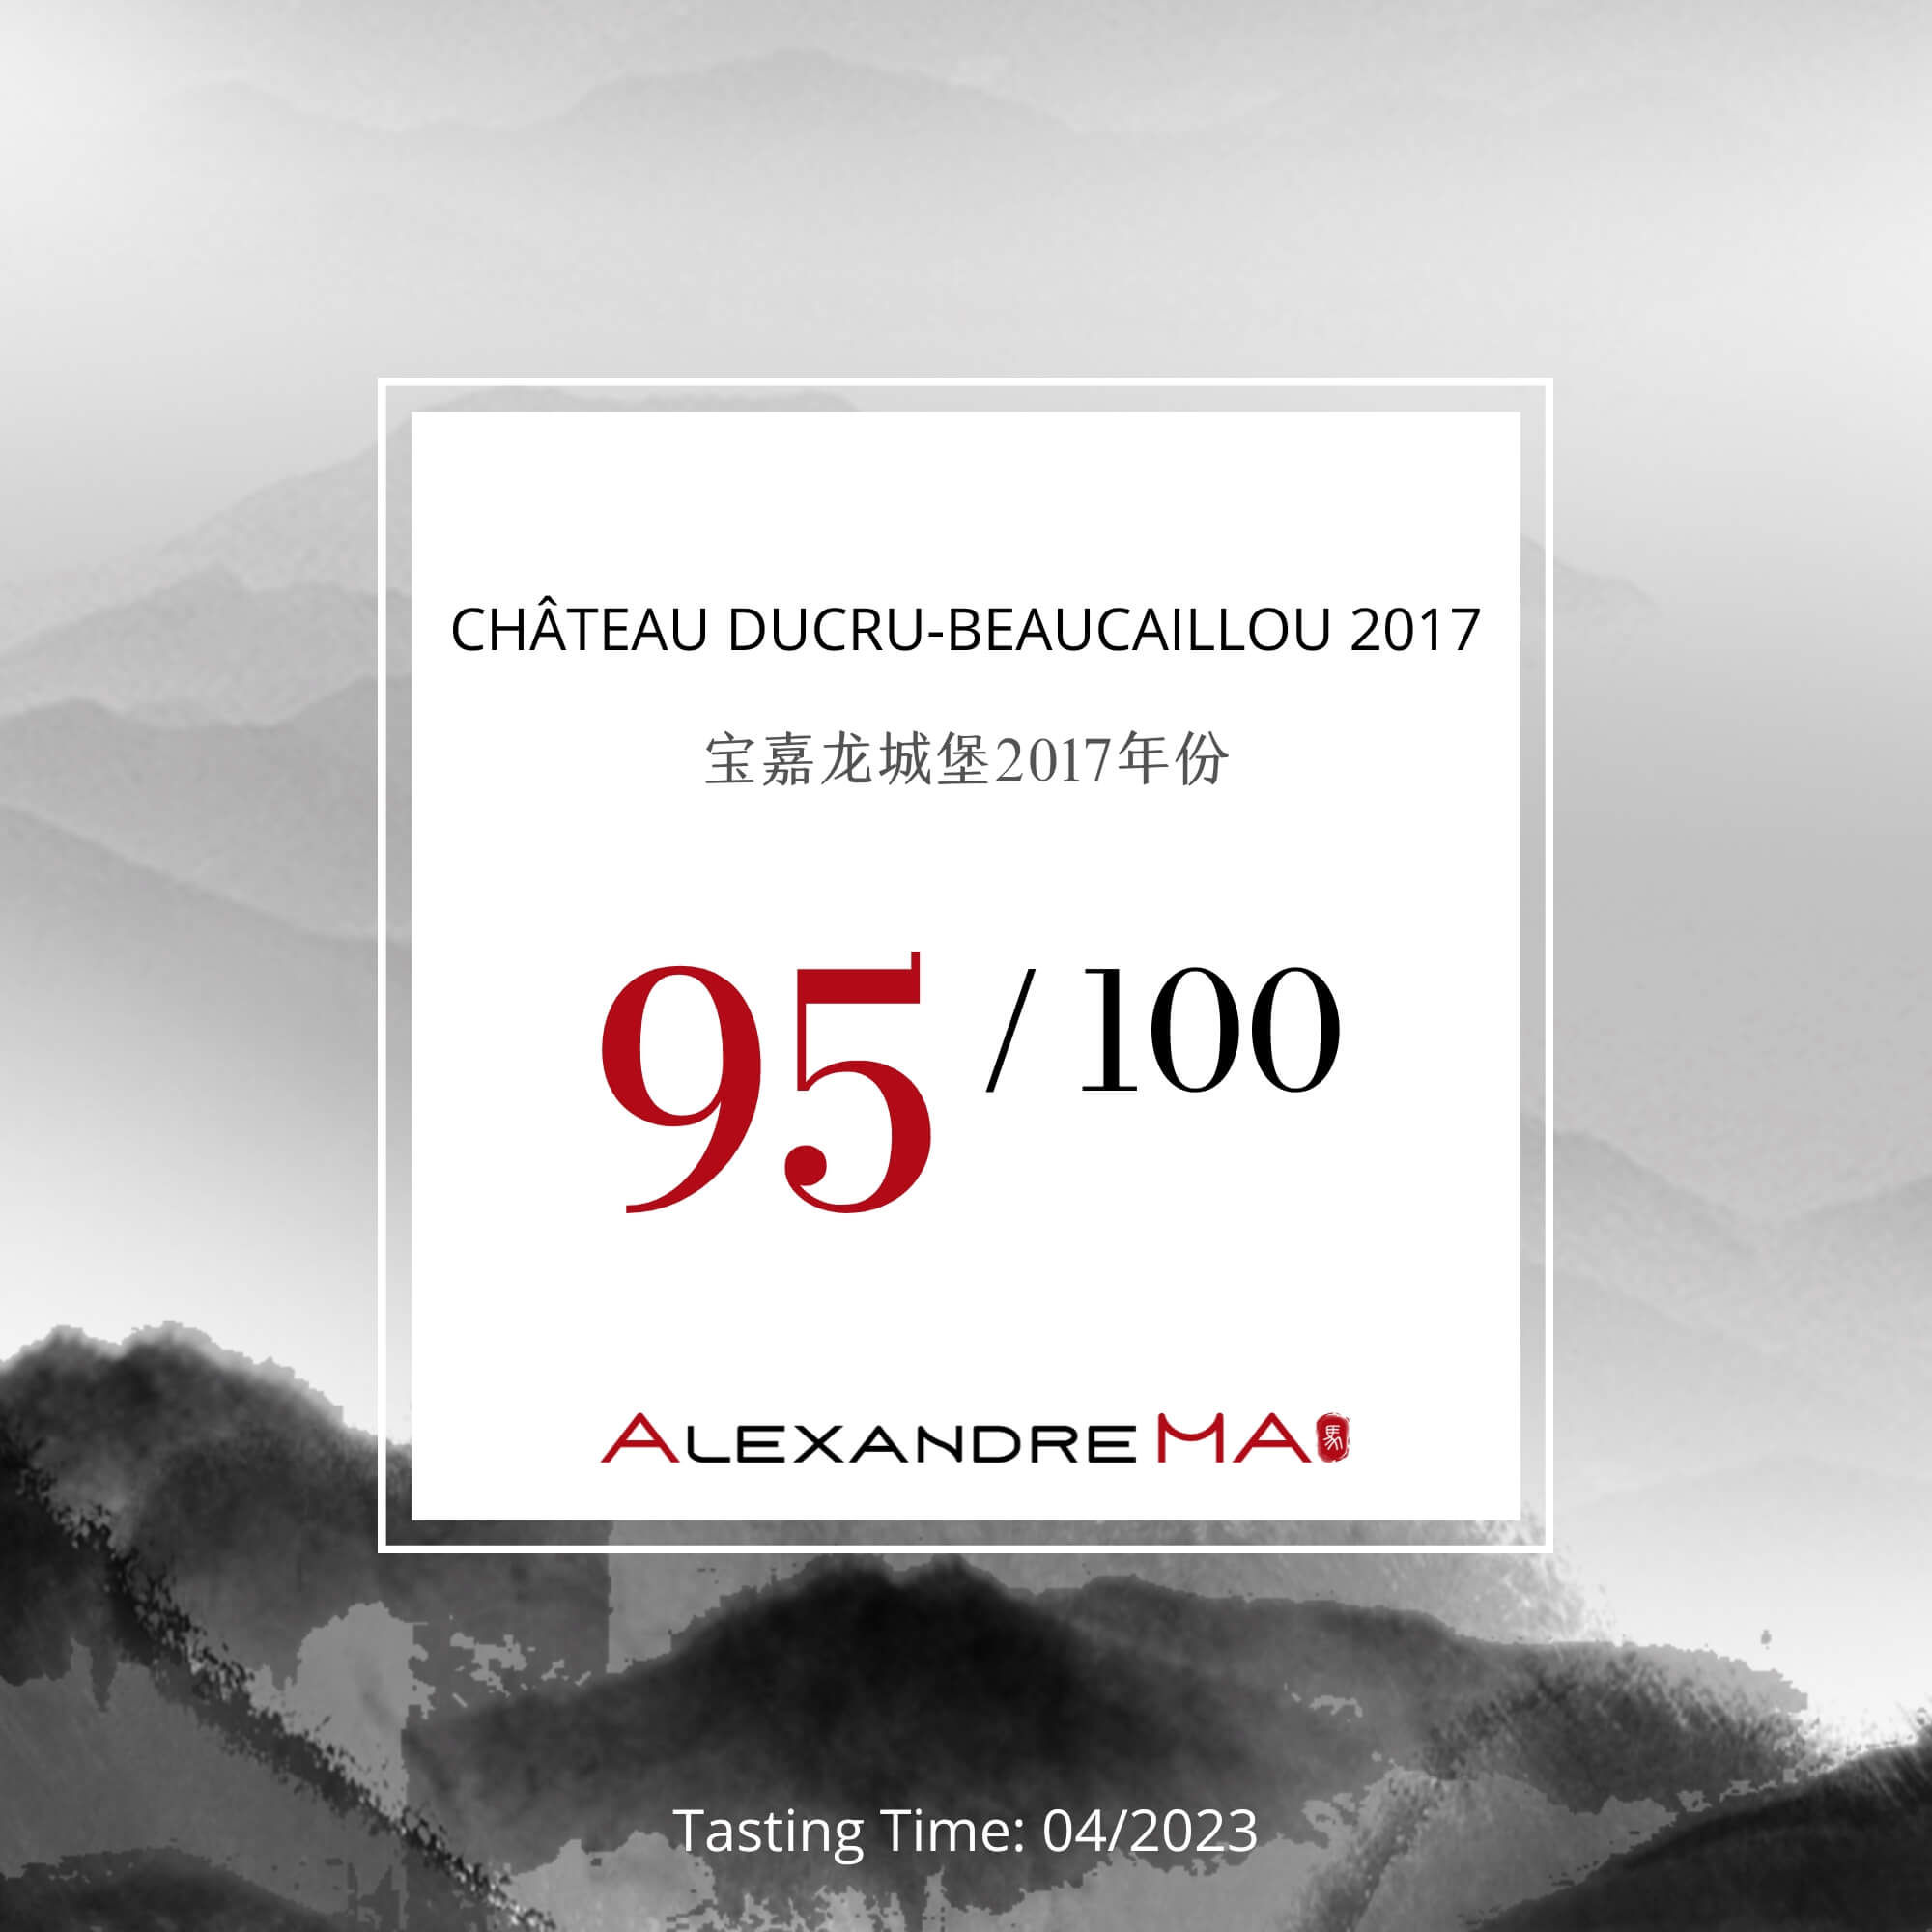 Château Ducru-Beaucaillou 2017 - Alexandre MA